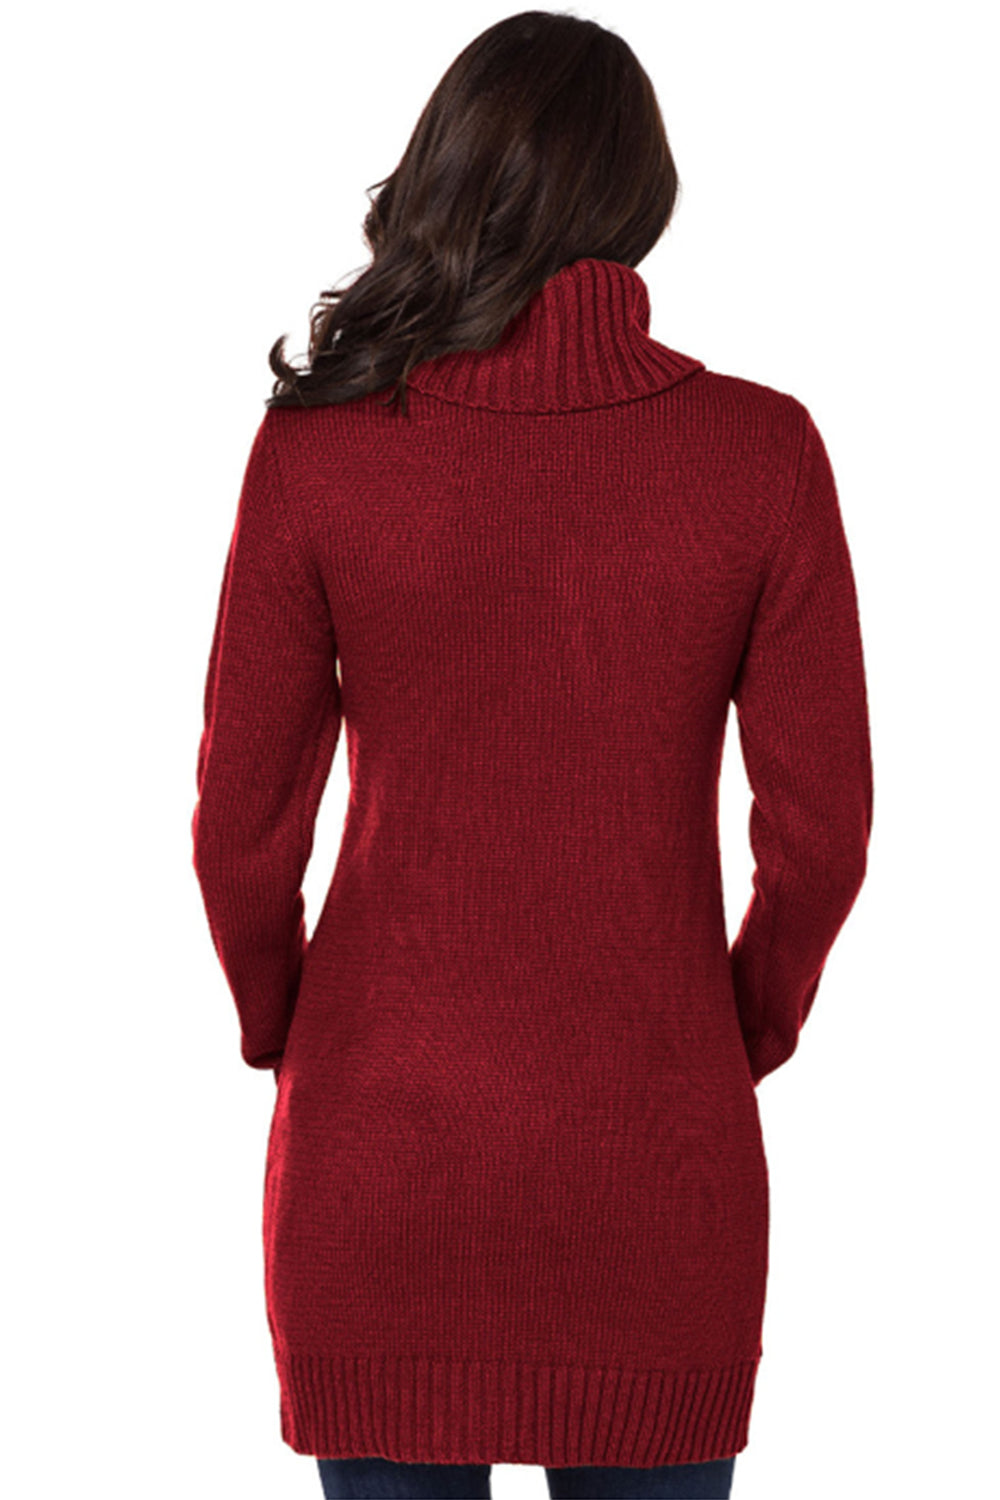 Women Turtleneck Long Sleeve Knit Pullover Sweaters Dress